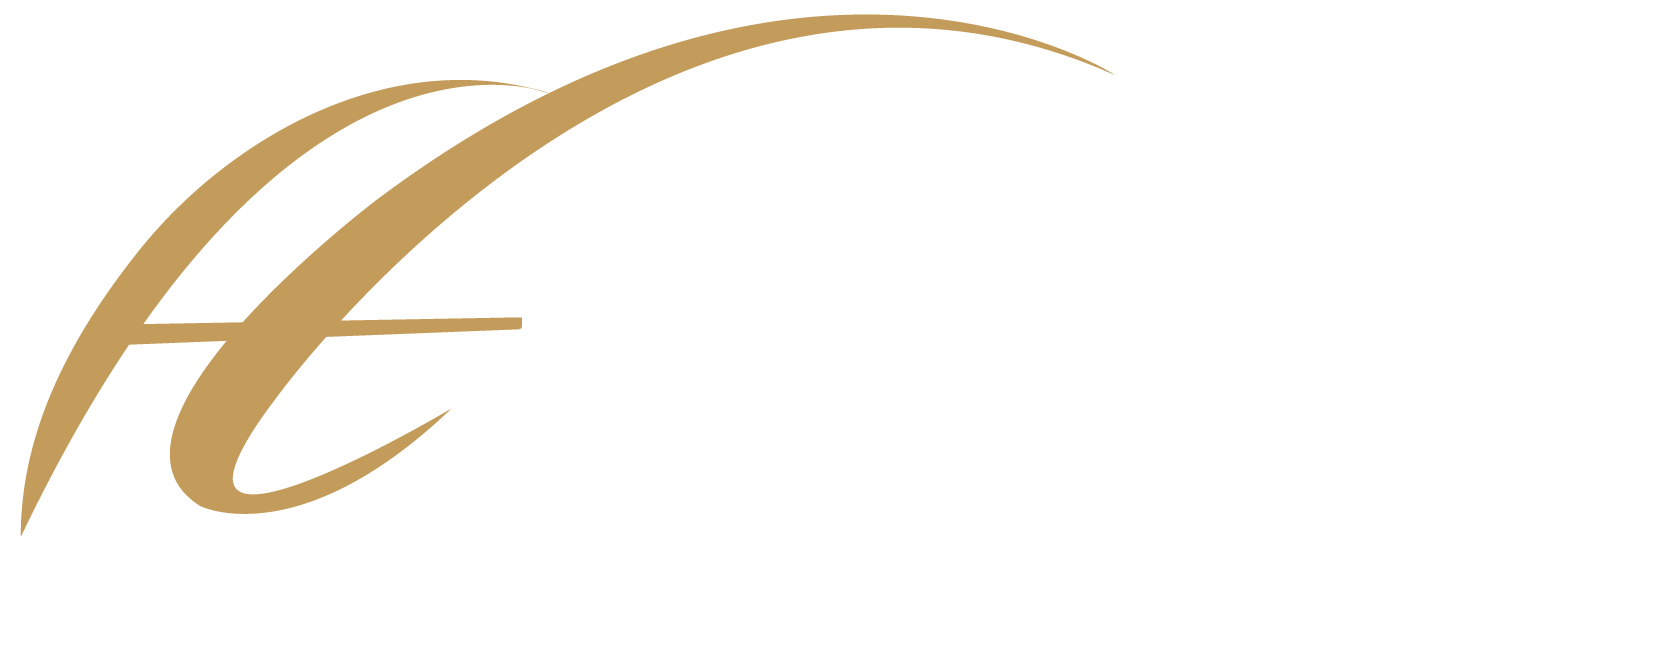 Hilltop Serviced Apartments